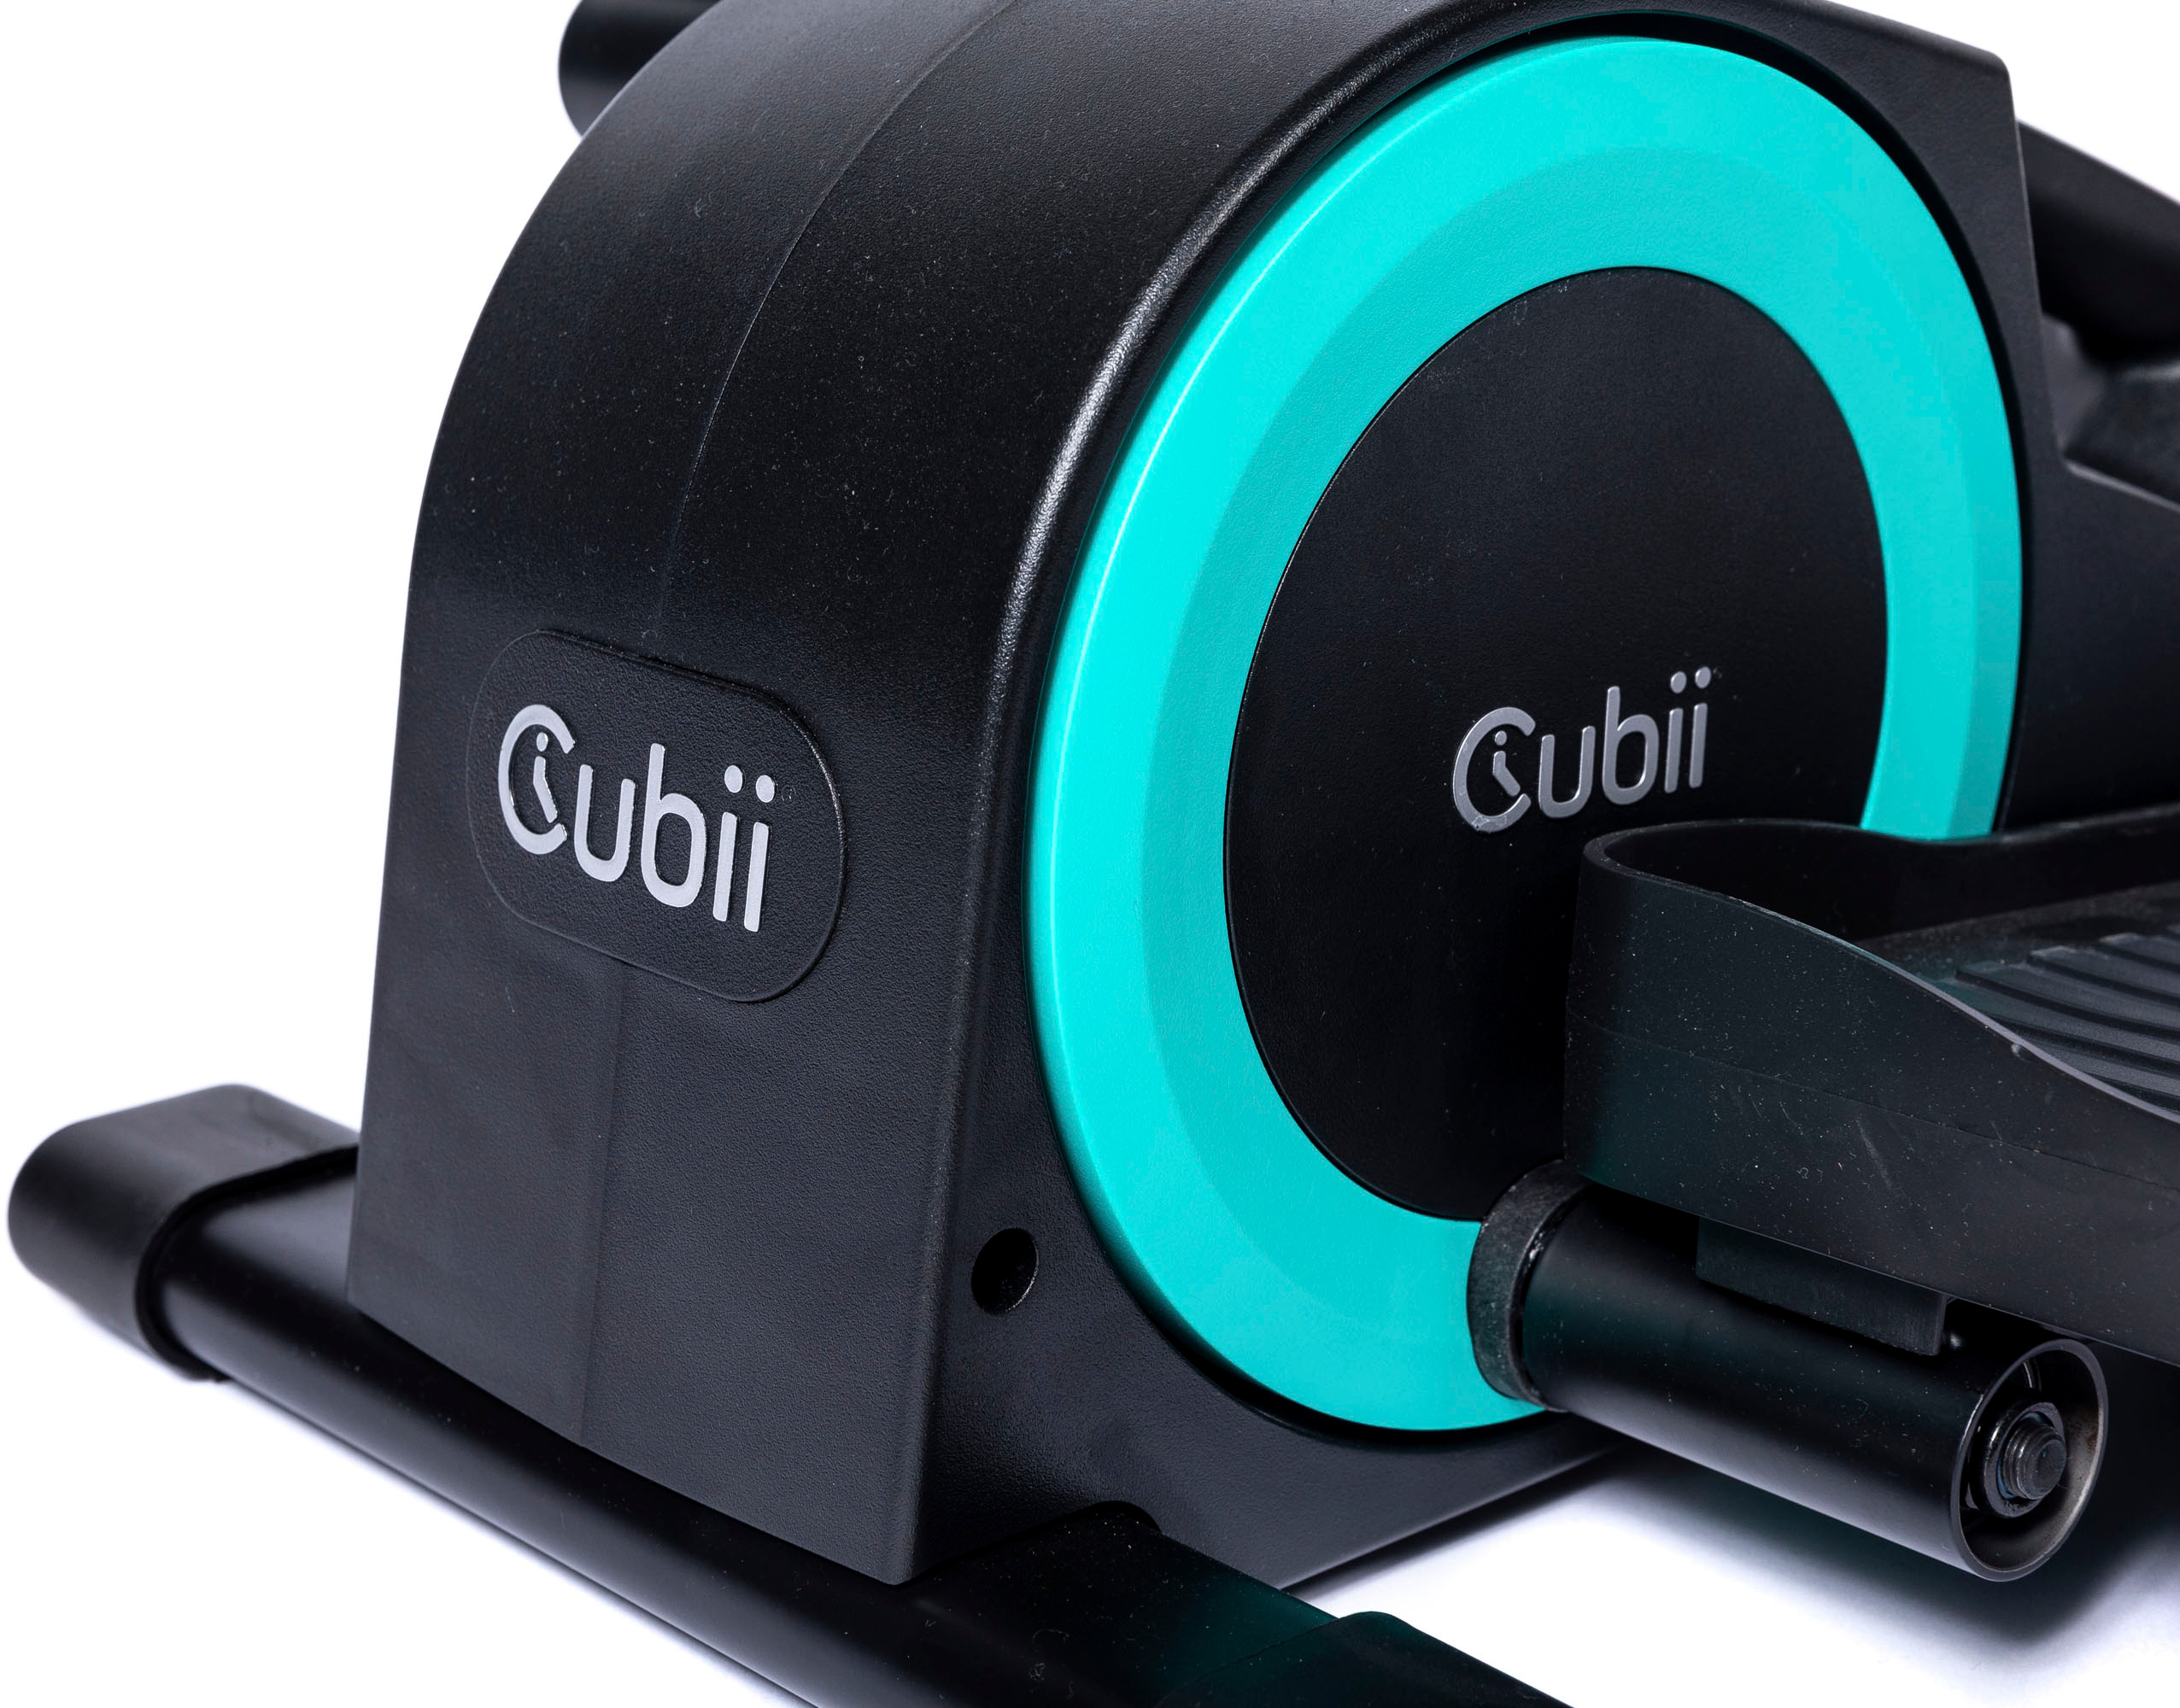 Cubii Cubii Go Portable Elliptical with a Large Illuminated Screen Cubii Go